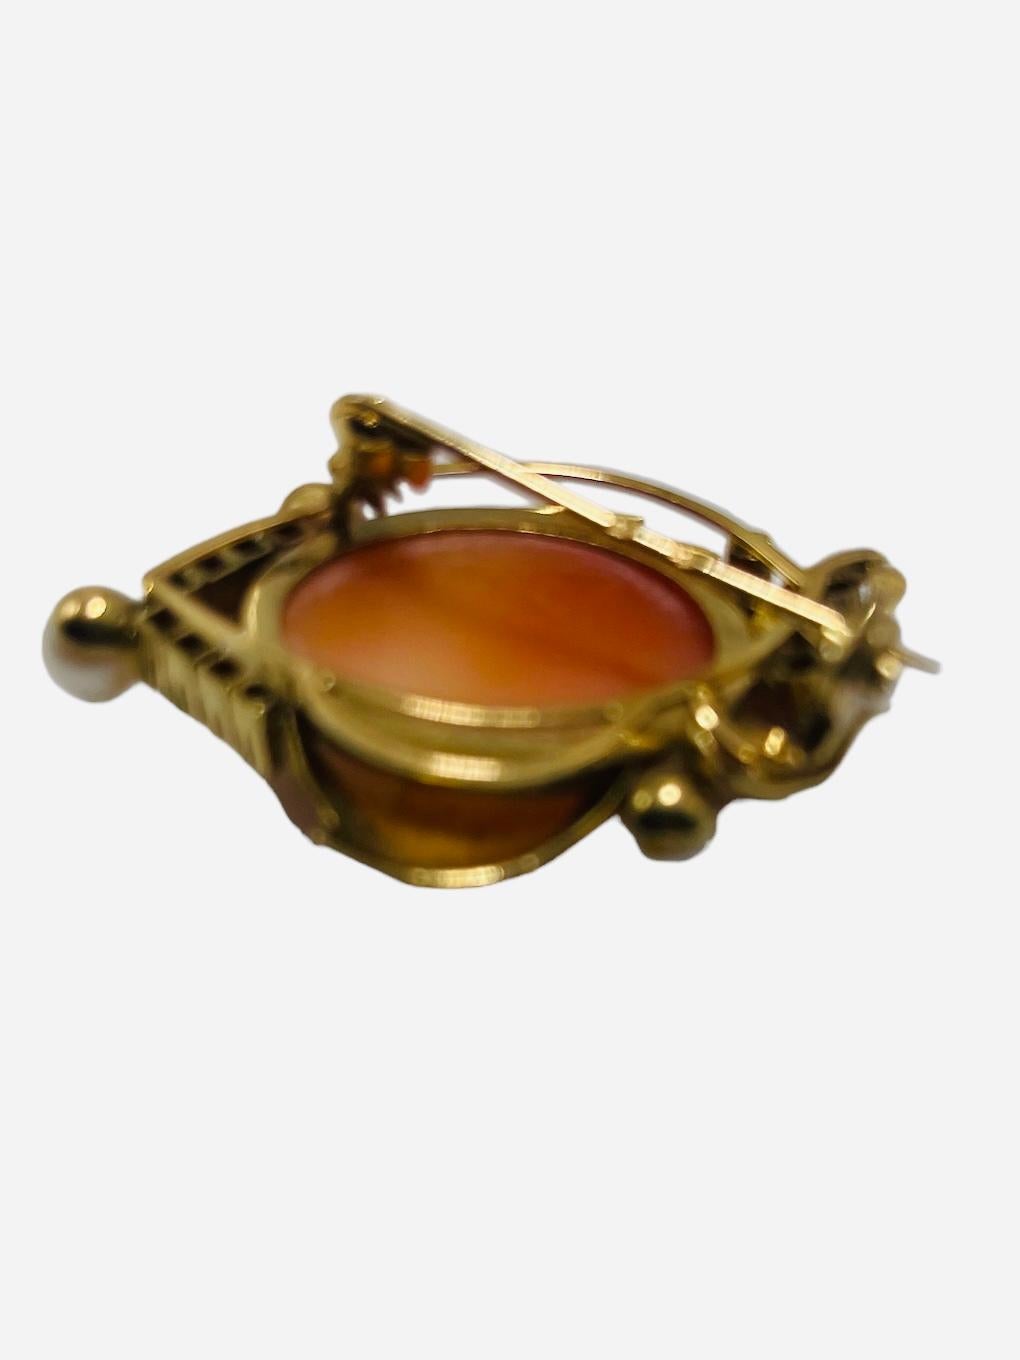 Il s'agit d'une broche/pendentif Camée en or 18 carats. Il s'agit d'un camée en coquillage orange de forme ovale avec un buste de femme en relief. La femme a les cheveux ondulés et porte des boucles d'oreilles. Son cou est orné d'un collier. Le